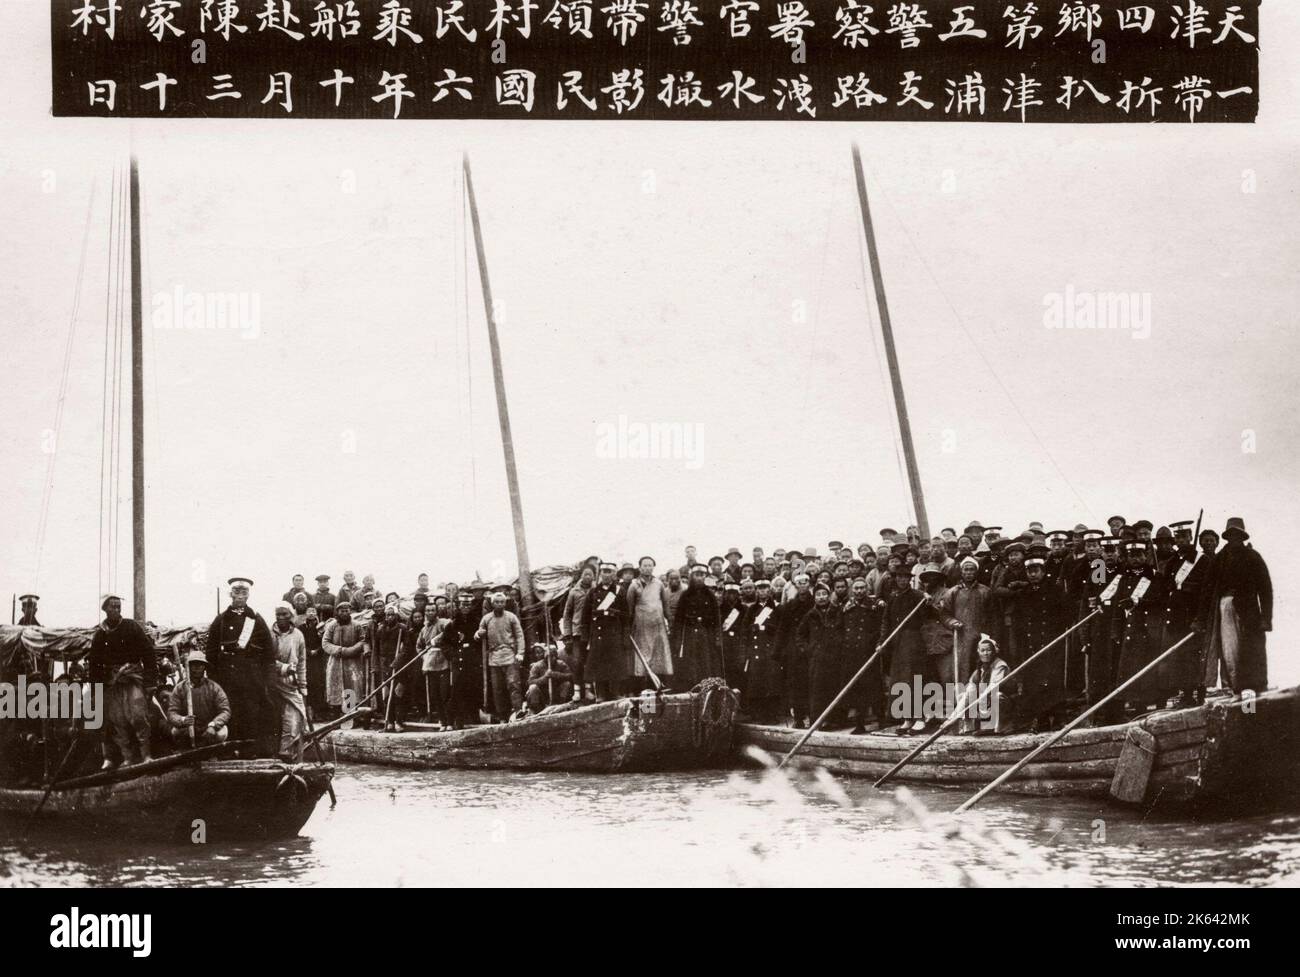 Les marais d'inondation énorme ville chinoise - pensé pour être Tianjin (Tientsin) en 1917. D'importantes inondations est connu pour avoir eu lieu cette année - inondant la plupart de la ville et provoquant à la fois un problème de réfugiés et la maladie. Banque D'Images